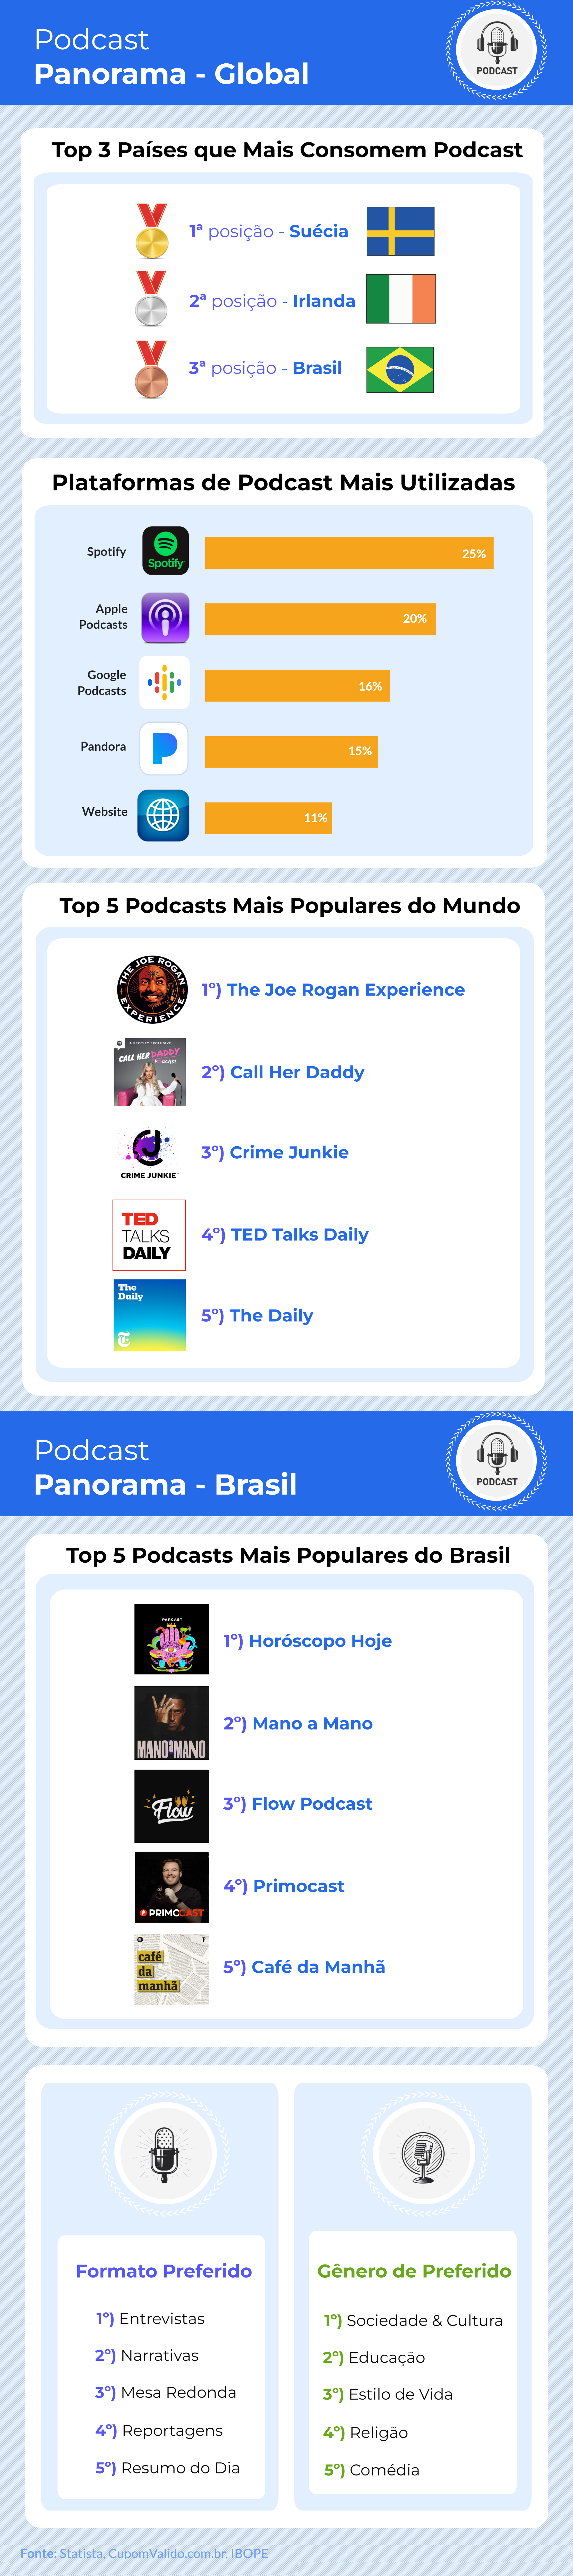 Brasil é o 3º pais que mais consome podcast no mundo